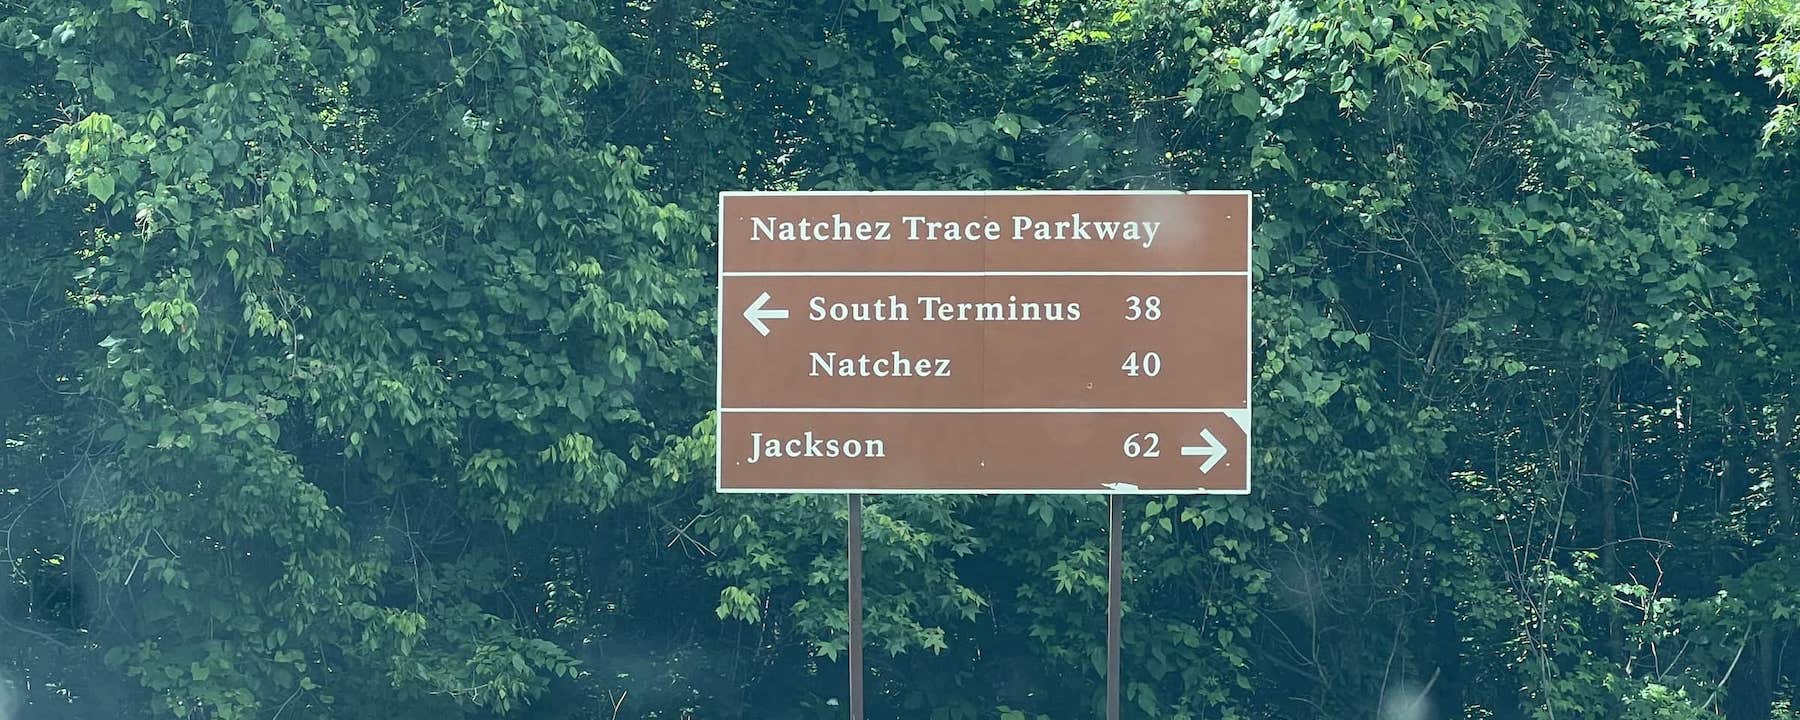 A drive along the Natchez Trace